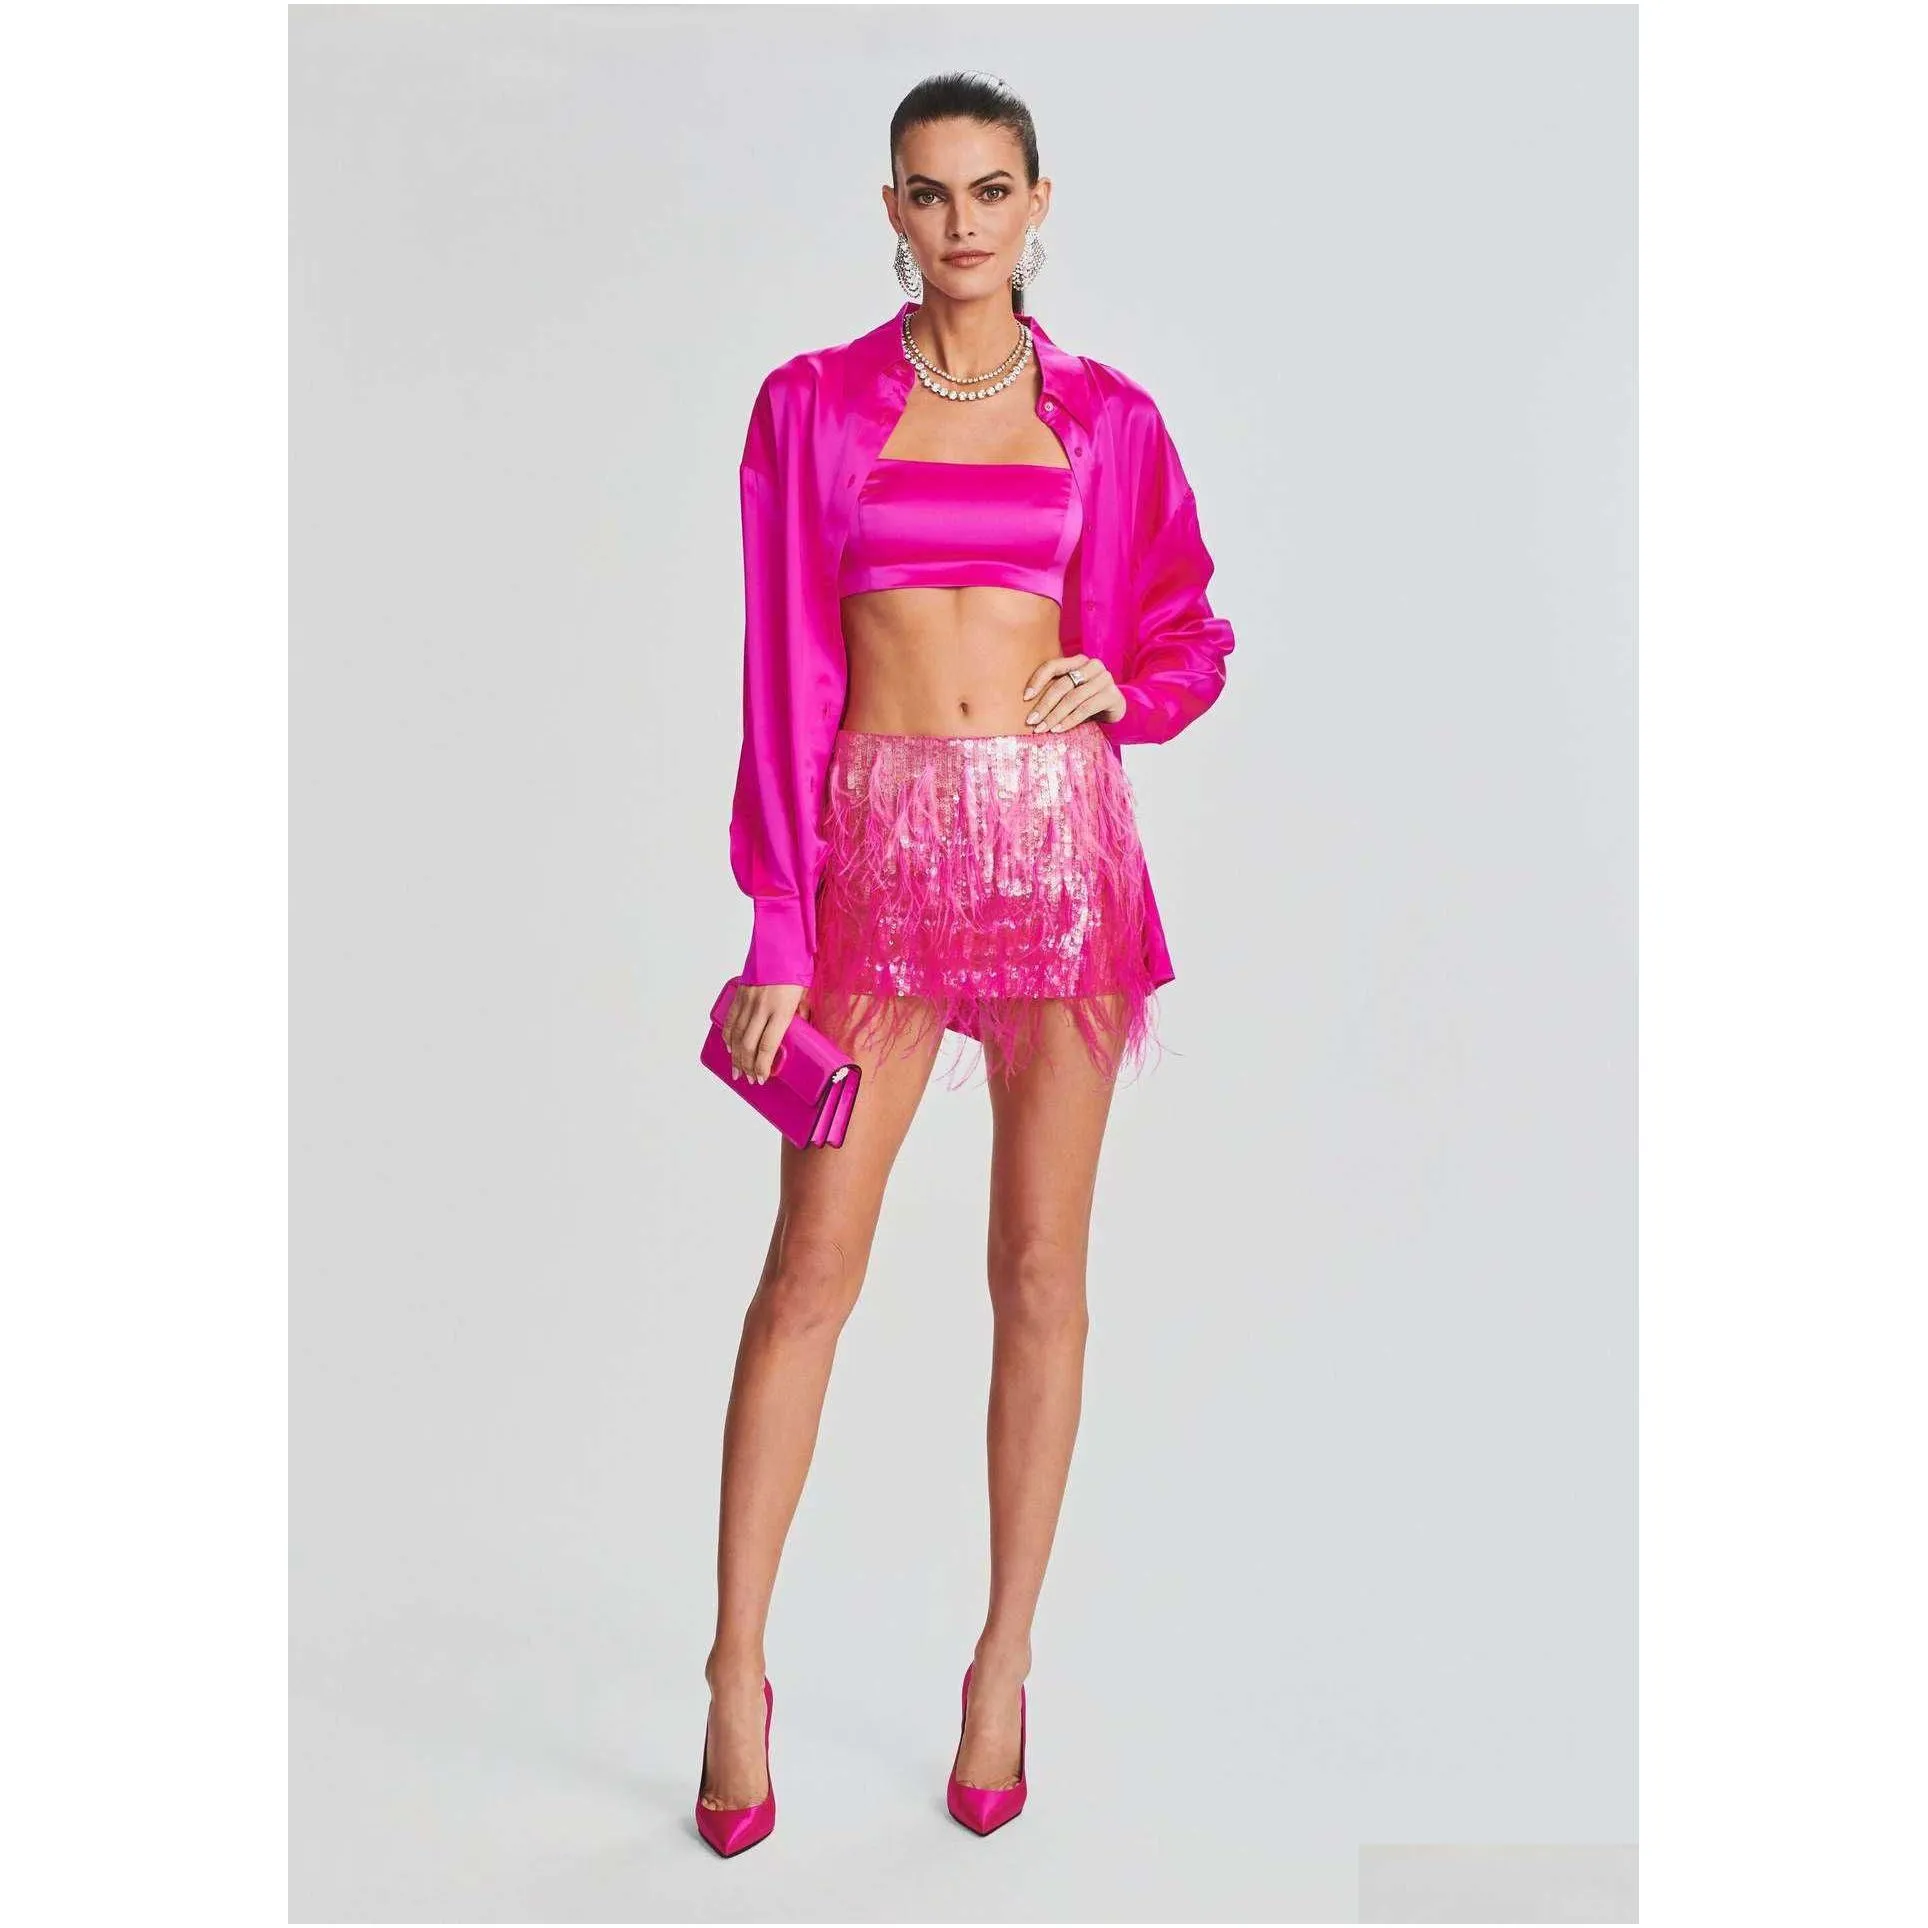 2023 summer new women`s short skirt shiny pink artificial feather spliced sequin half skirt